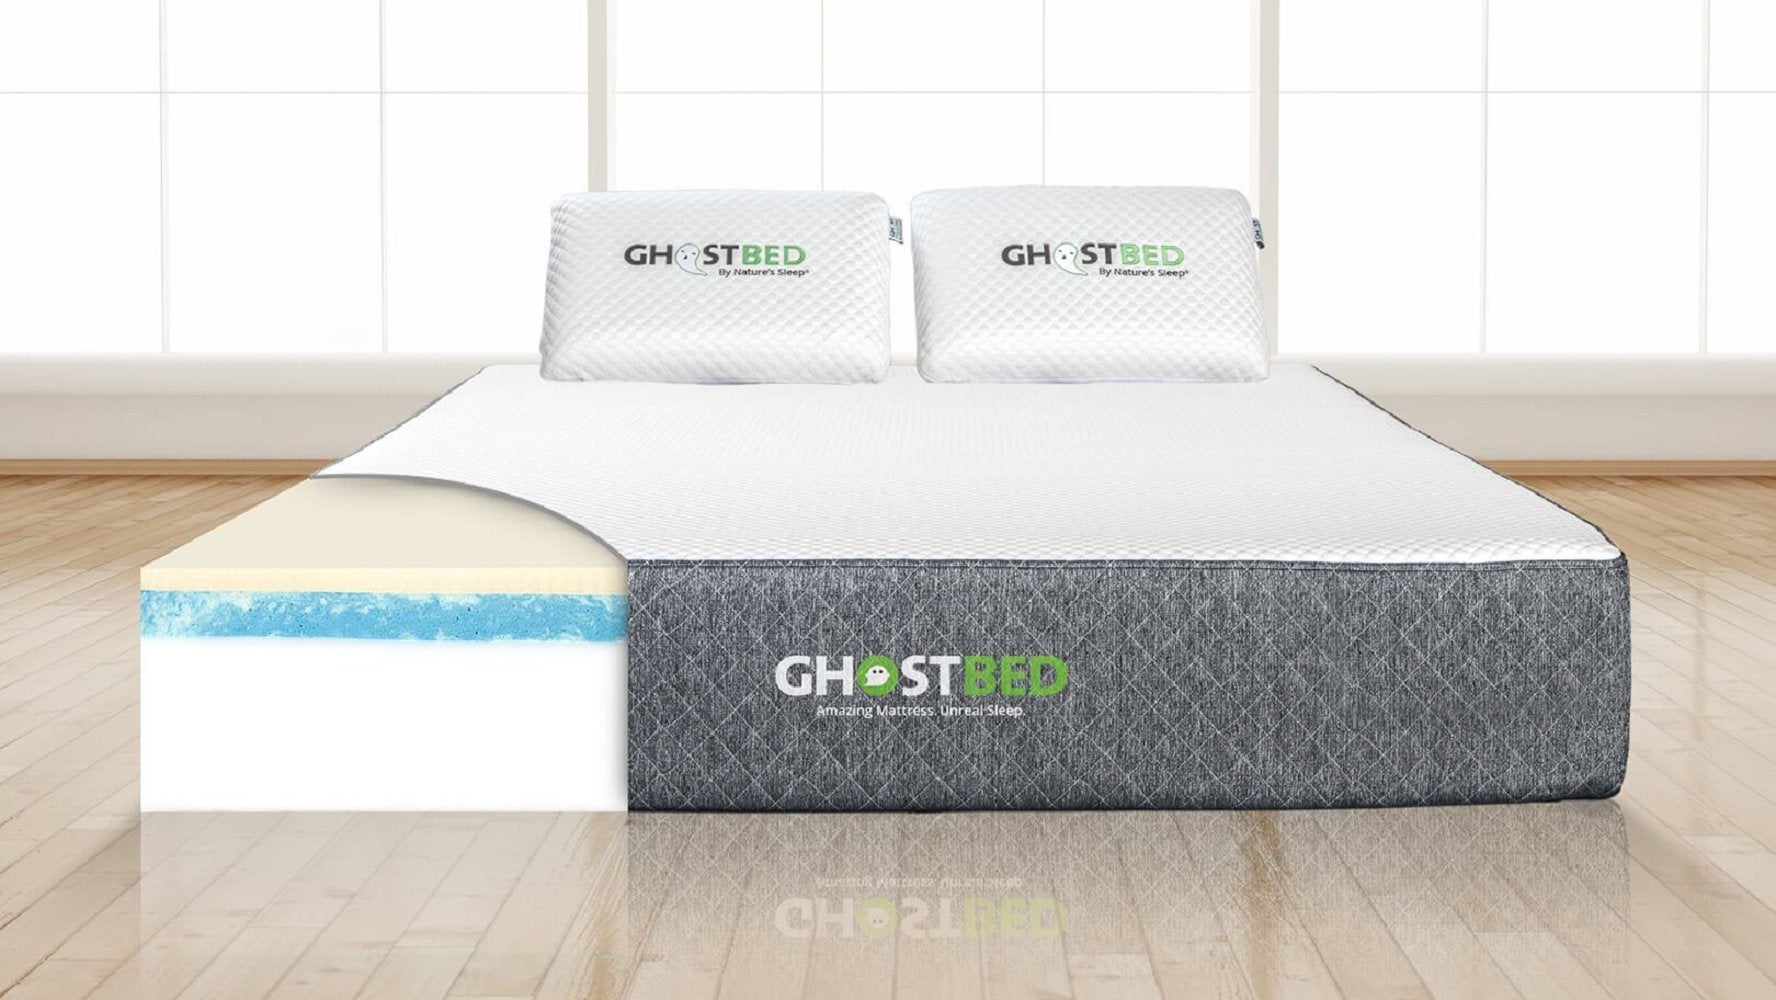 ghostbed gel memory foam mattress